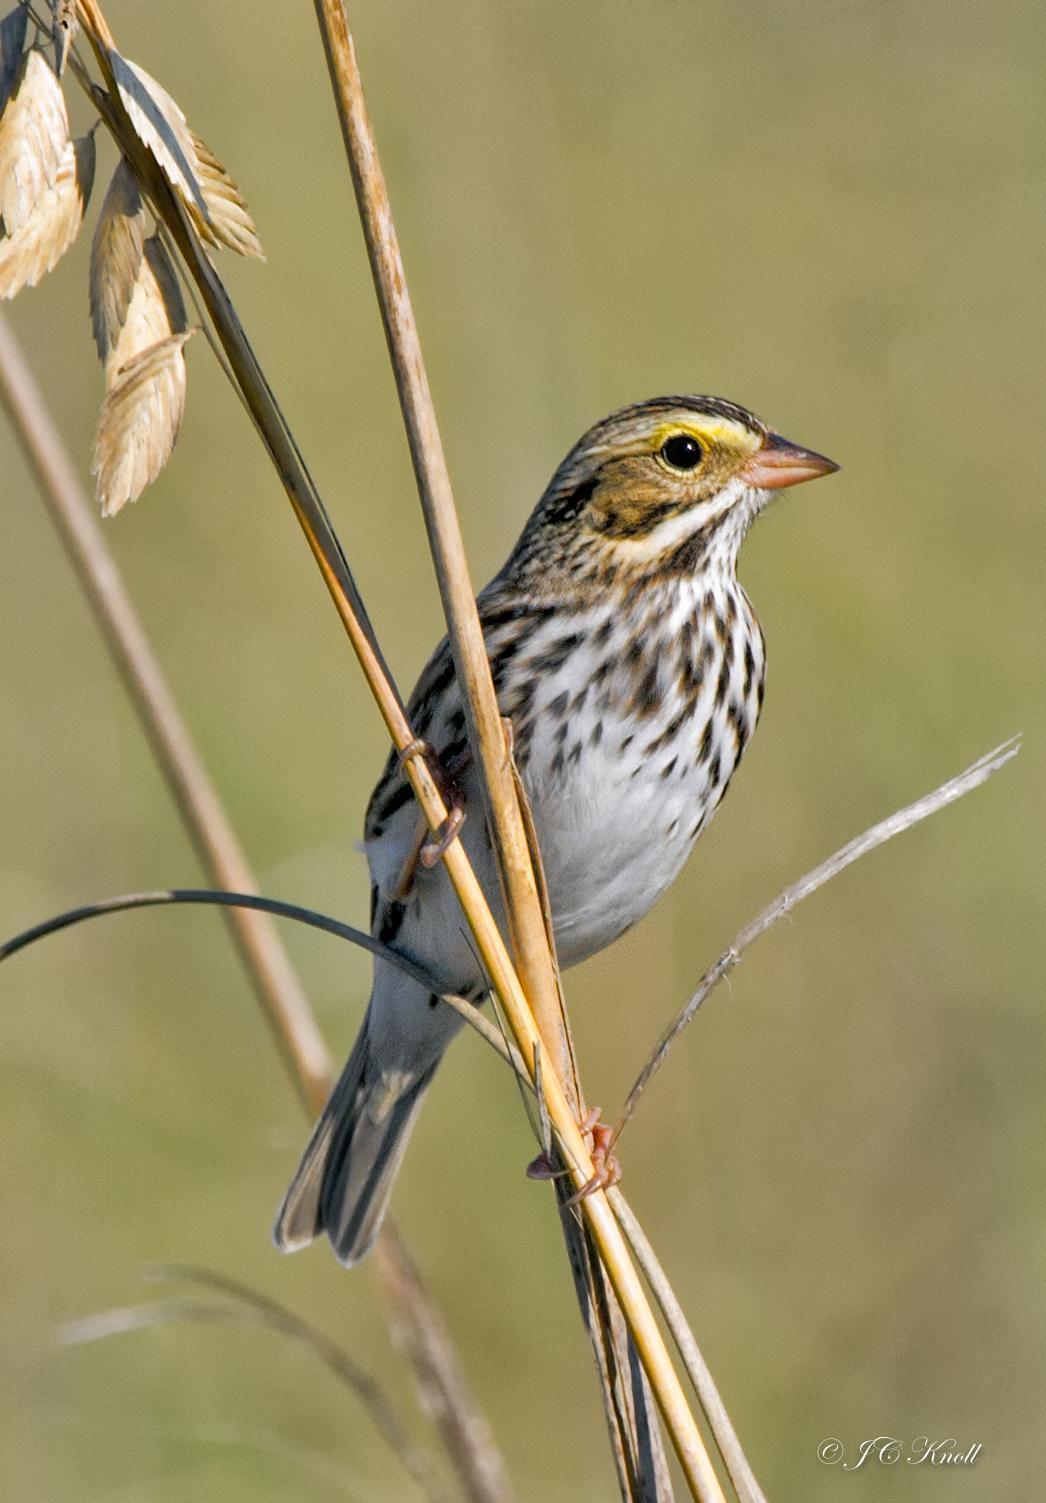 Savannah Sparrow Photo by JC Knoll